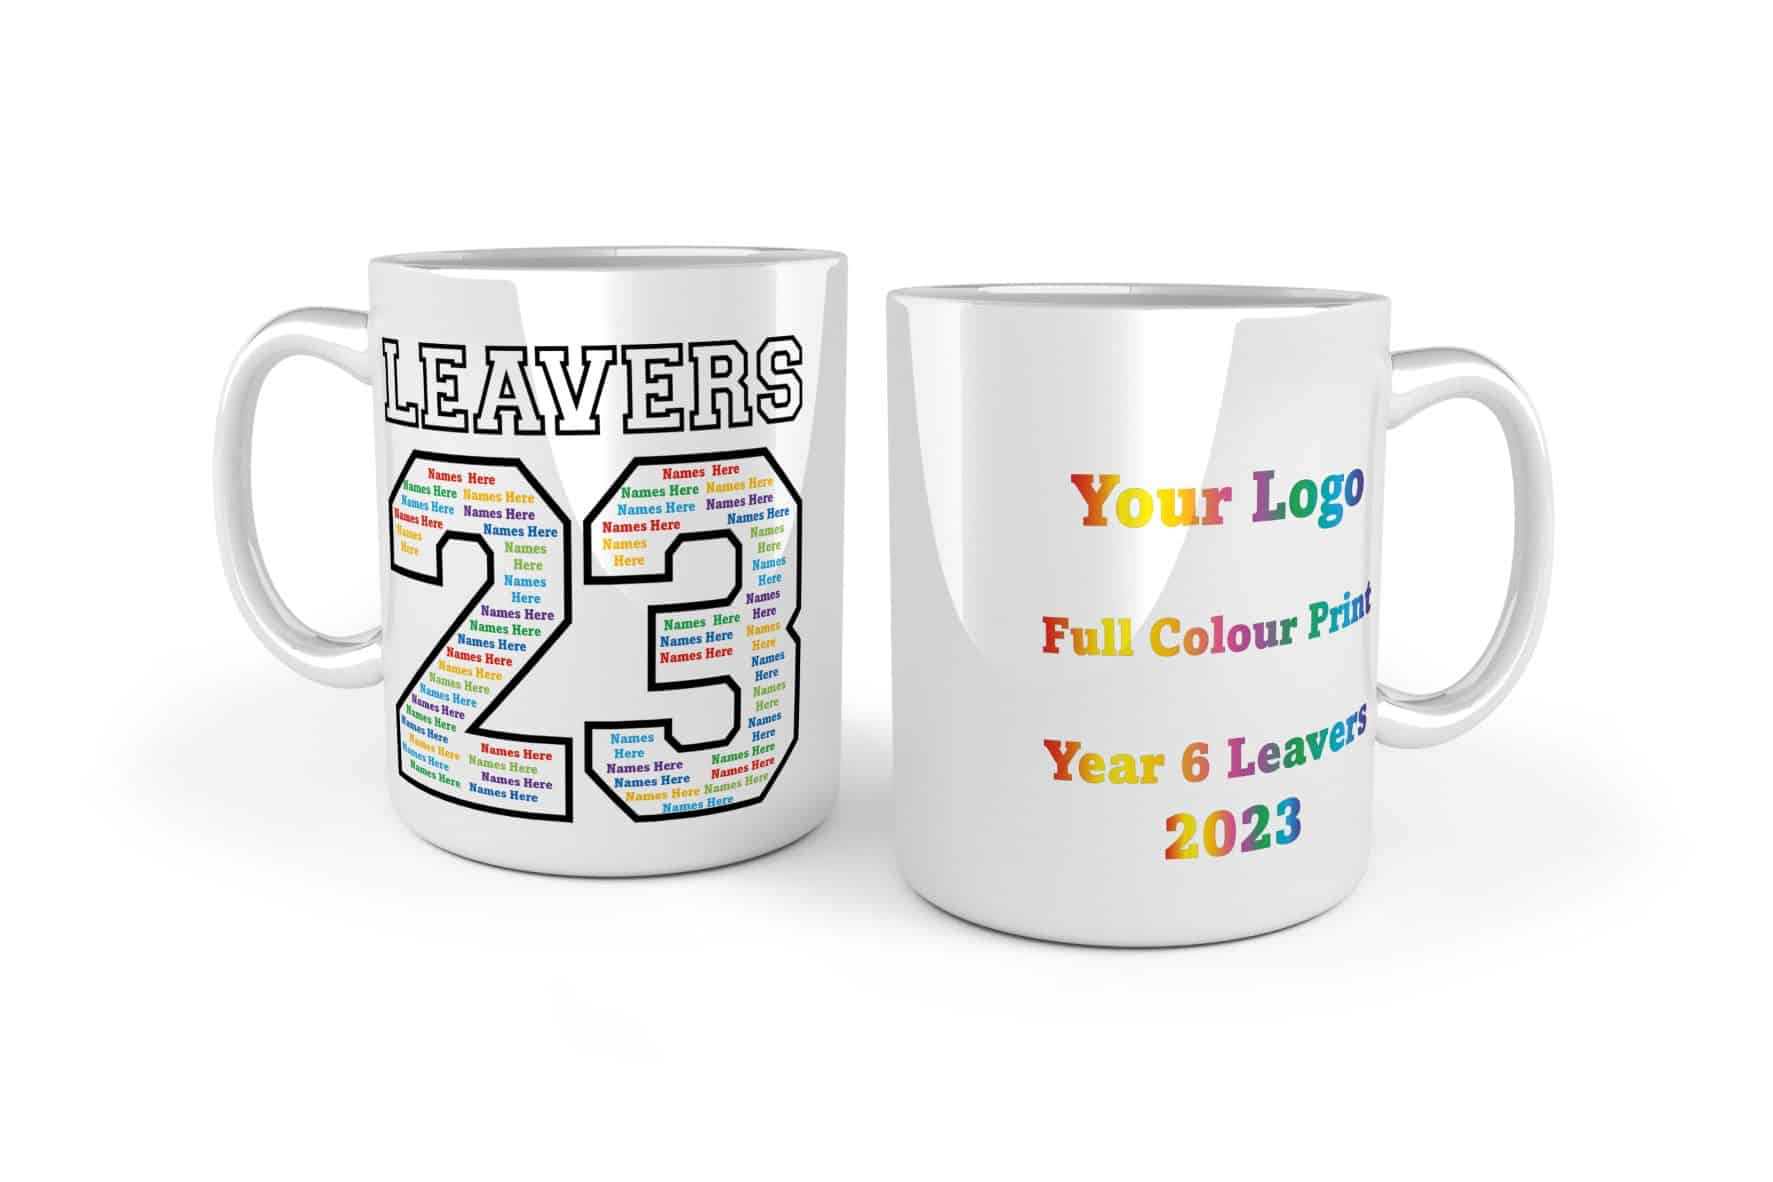 Leavers-23-full-colour-mug.jpg